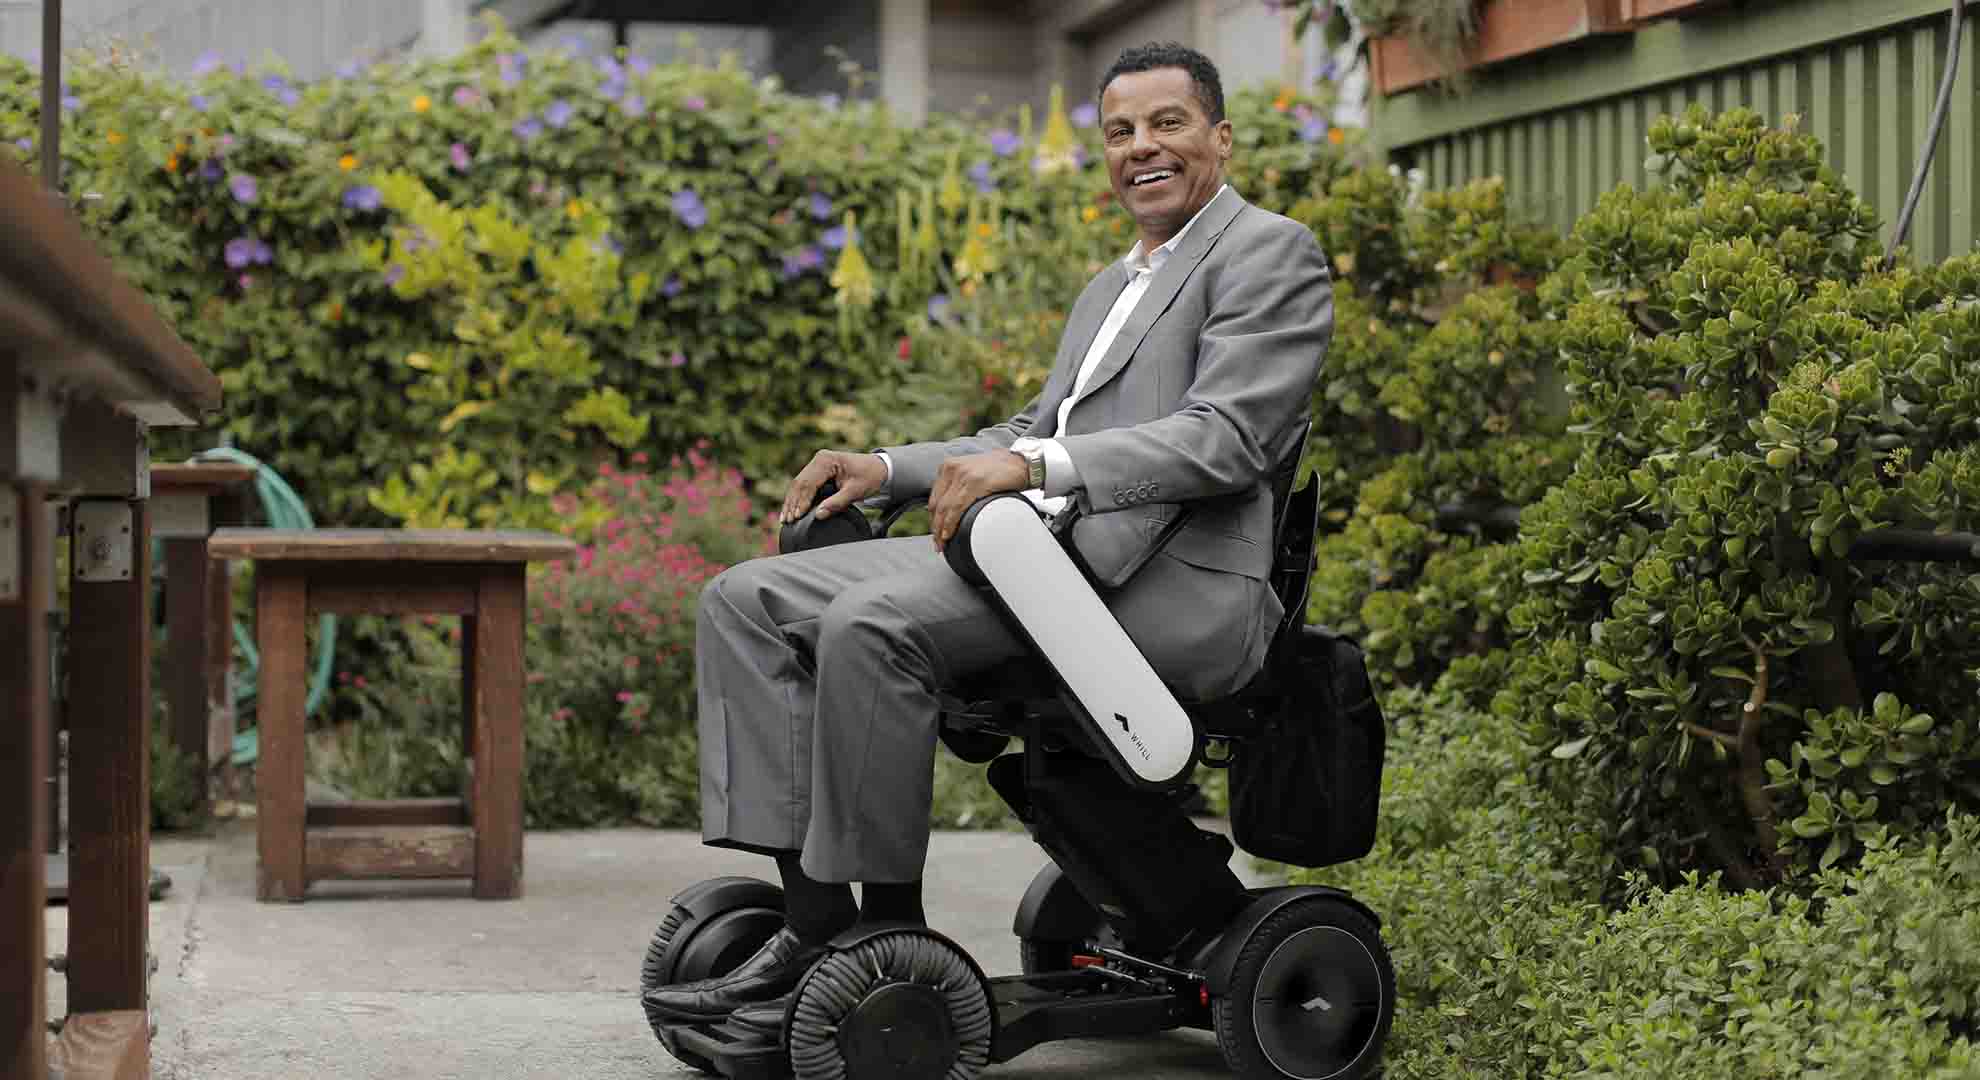 El Model Ci: un paso adelante en el diseño de la silla de ruedas